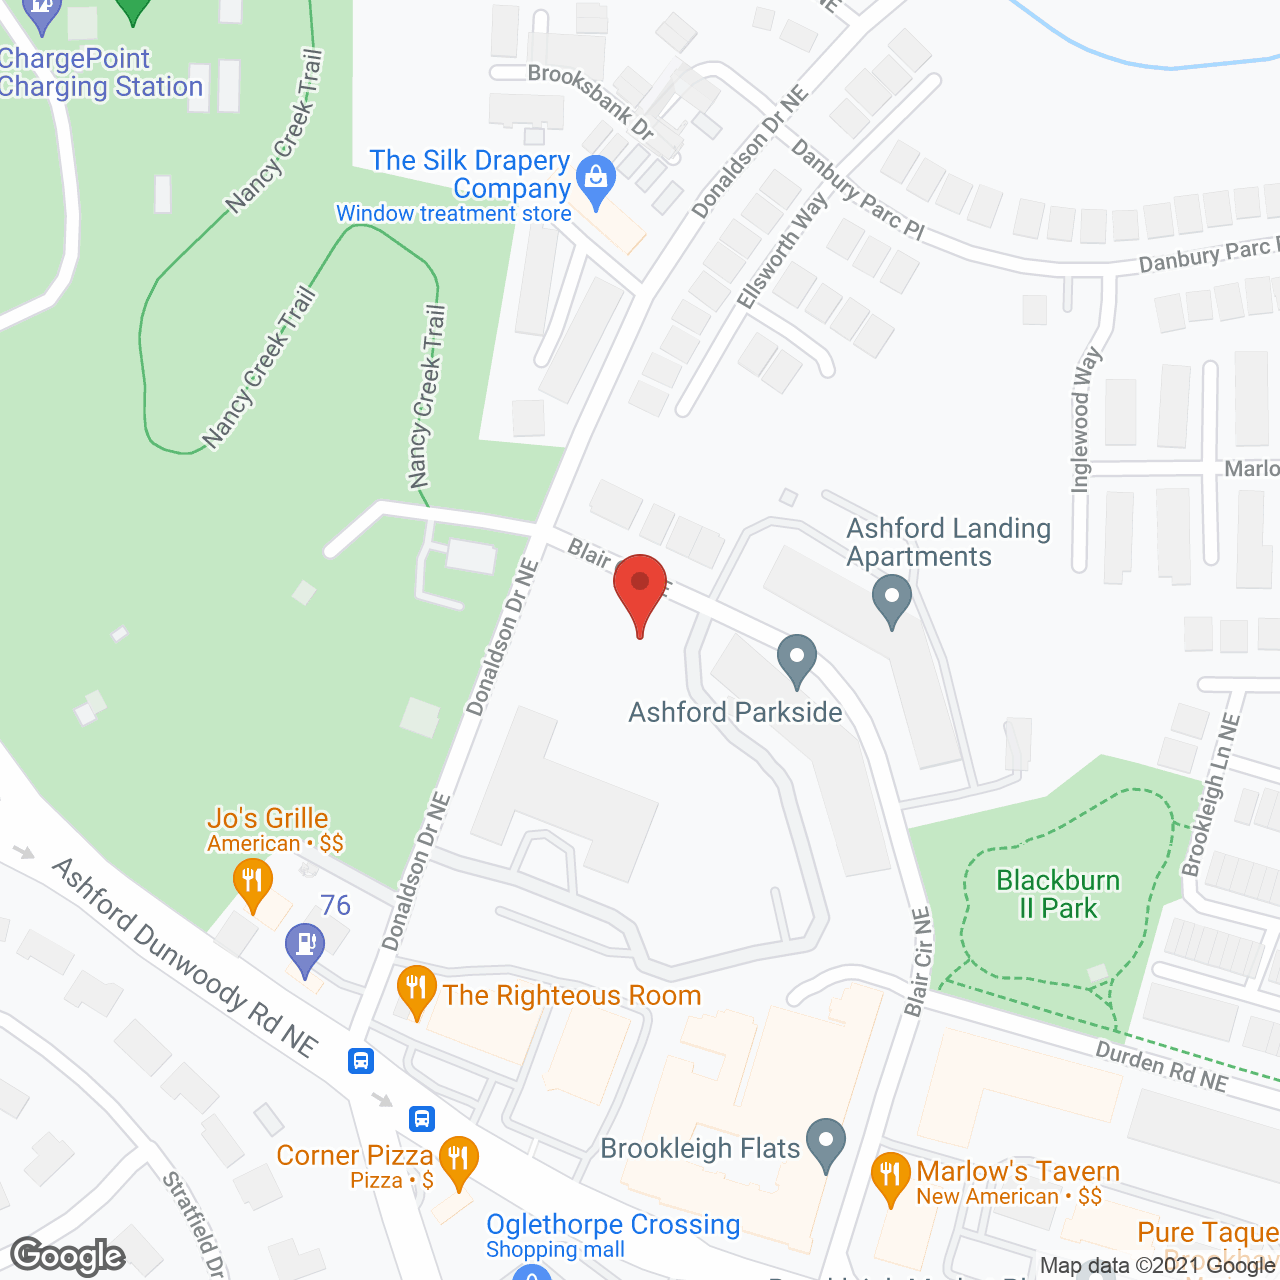 Ashford Parkside in google map